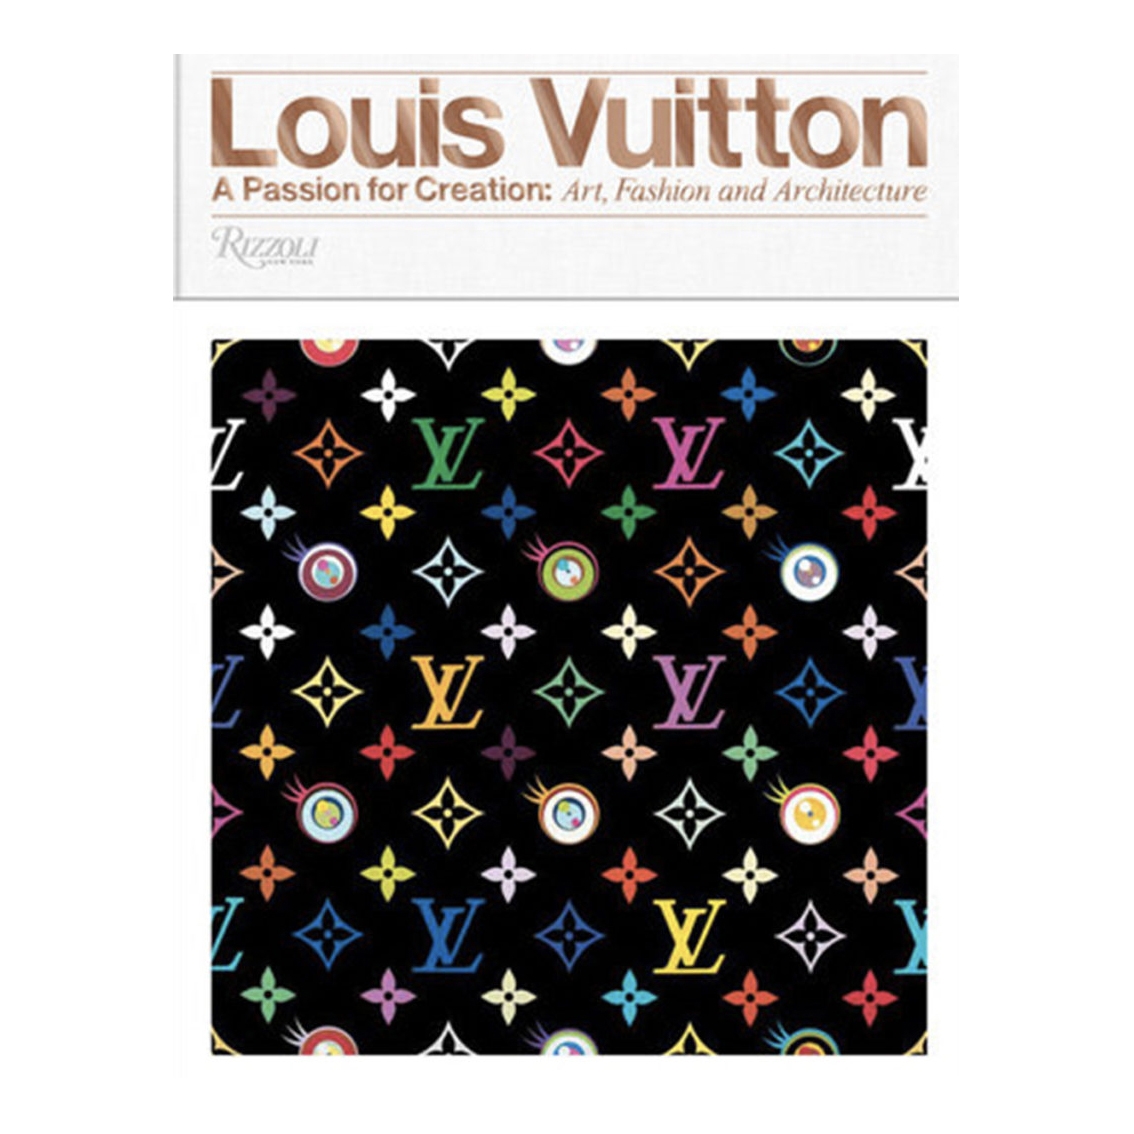 Louis Vuitton Boutique LV Fashion Store Façade Poster -  Sweden